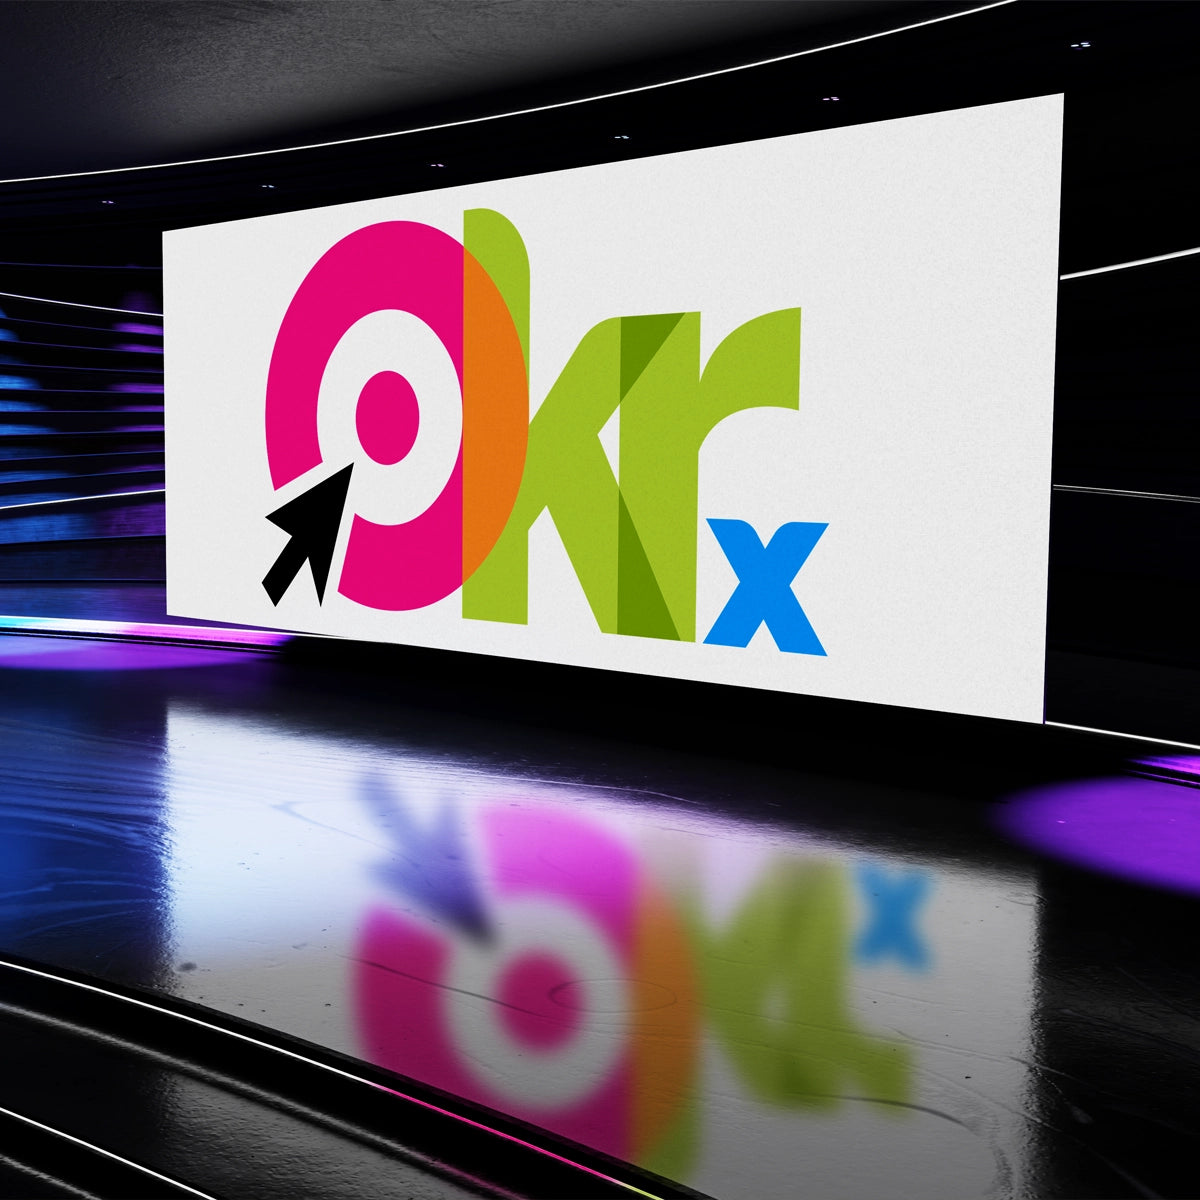 okrx.com